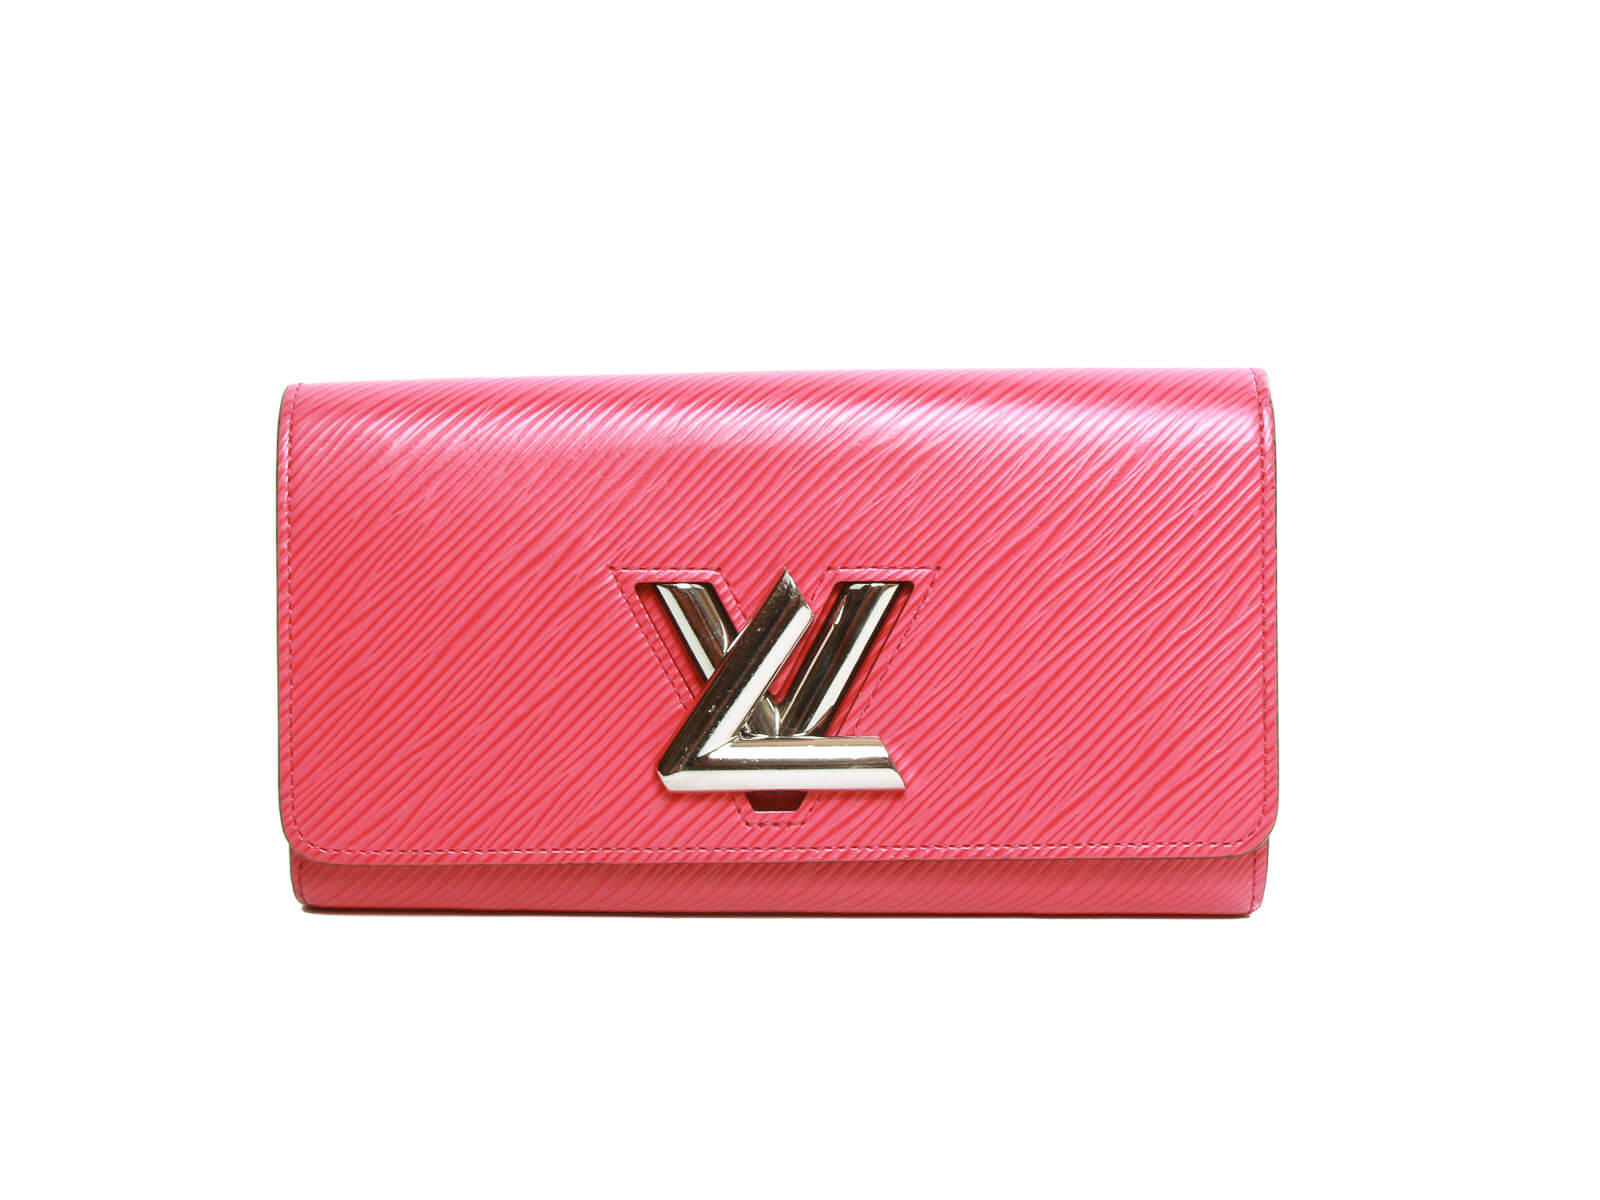 Authentic Louis Vuitton Portefeuille Wallet pink Connect Japan